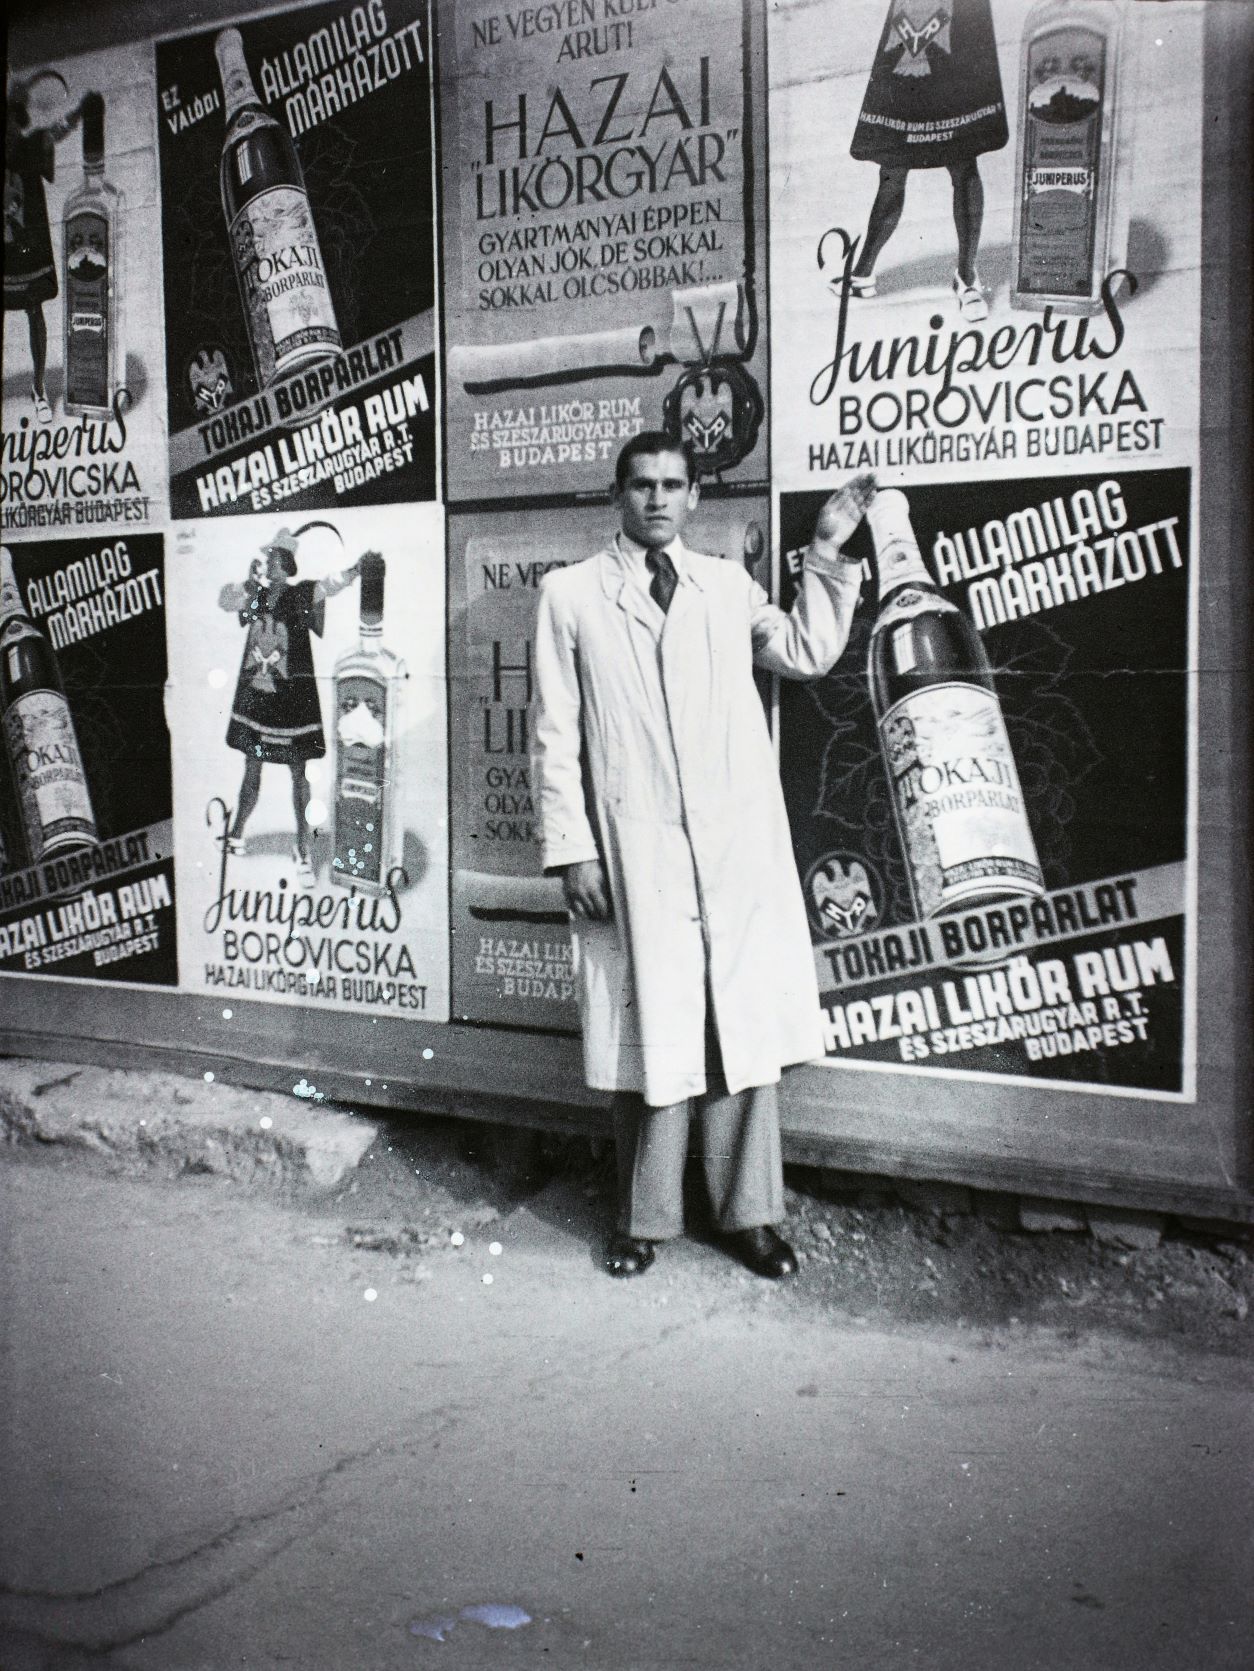 Hazai likőrgyár reklámja, 1940-ben.